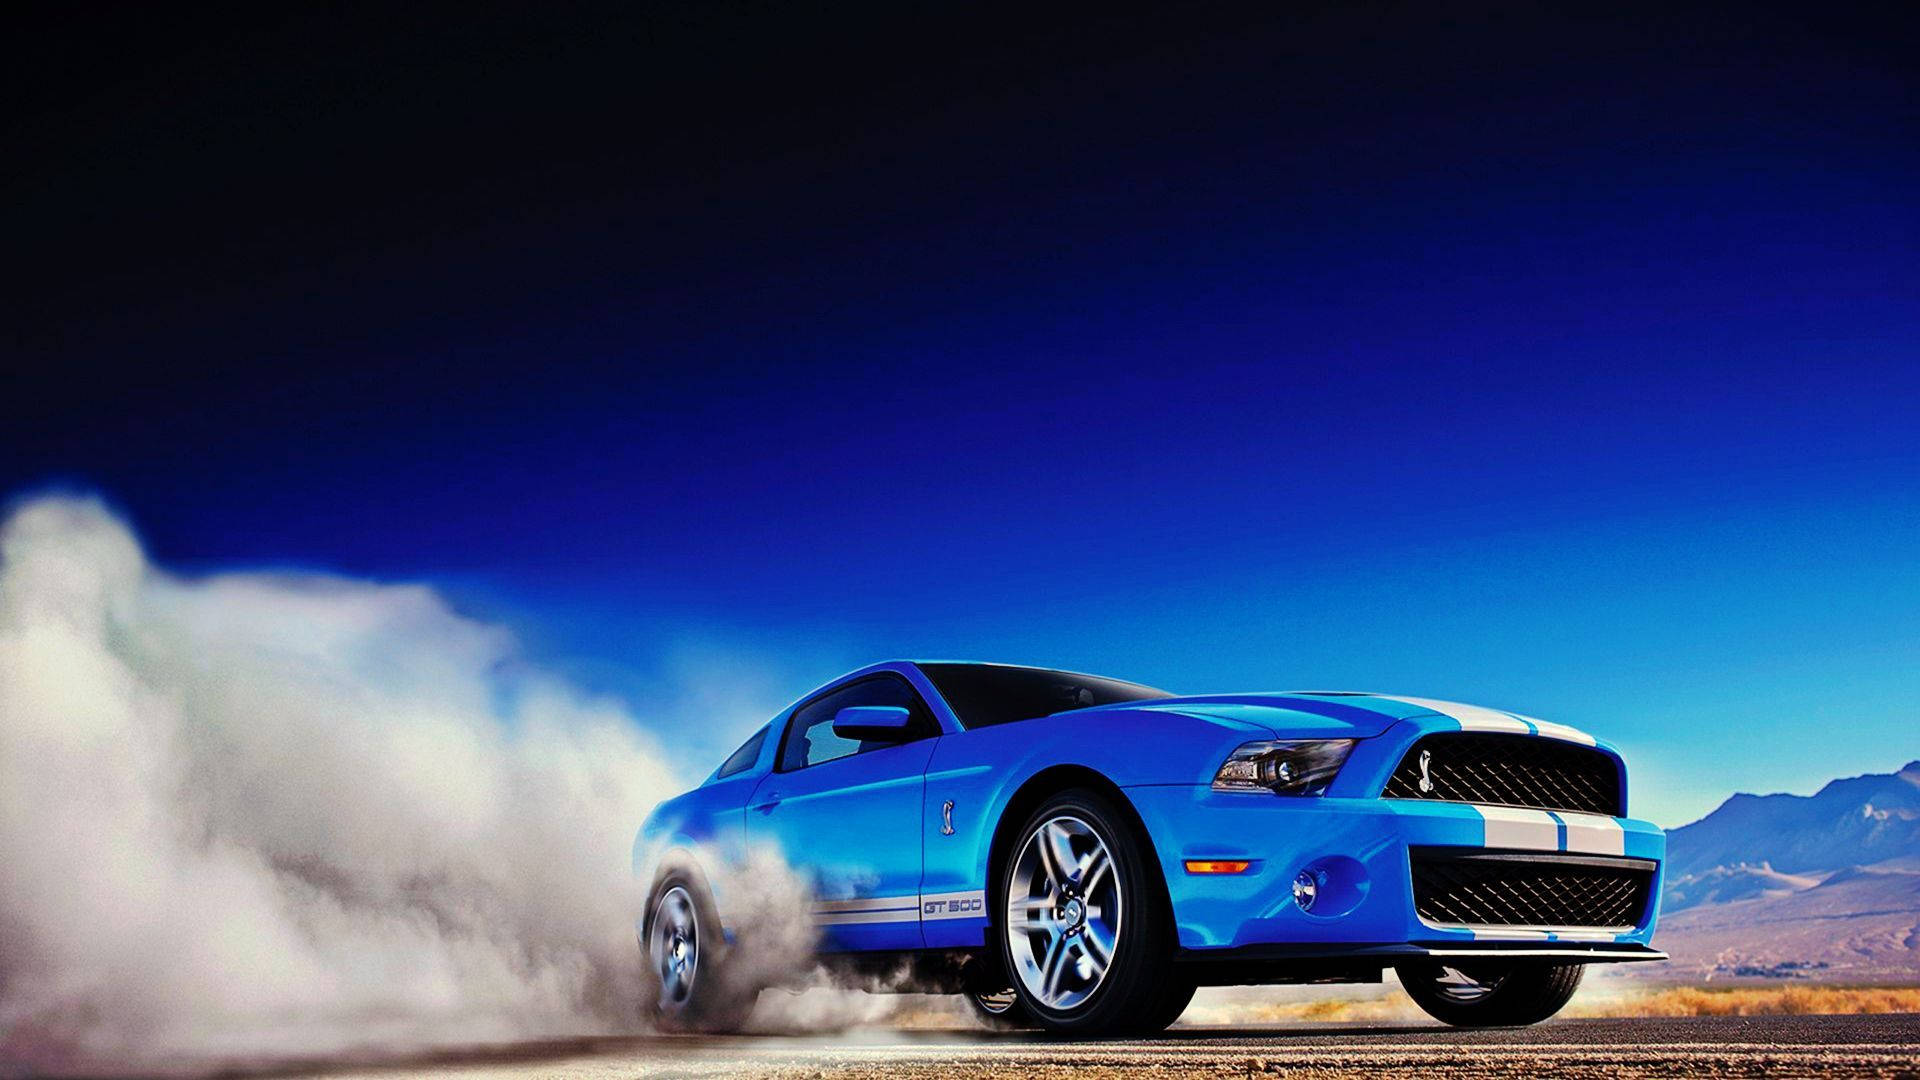 Blue Sports Car In A Desert Wallpaper